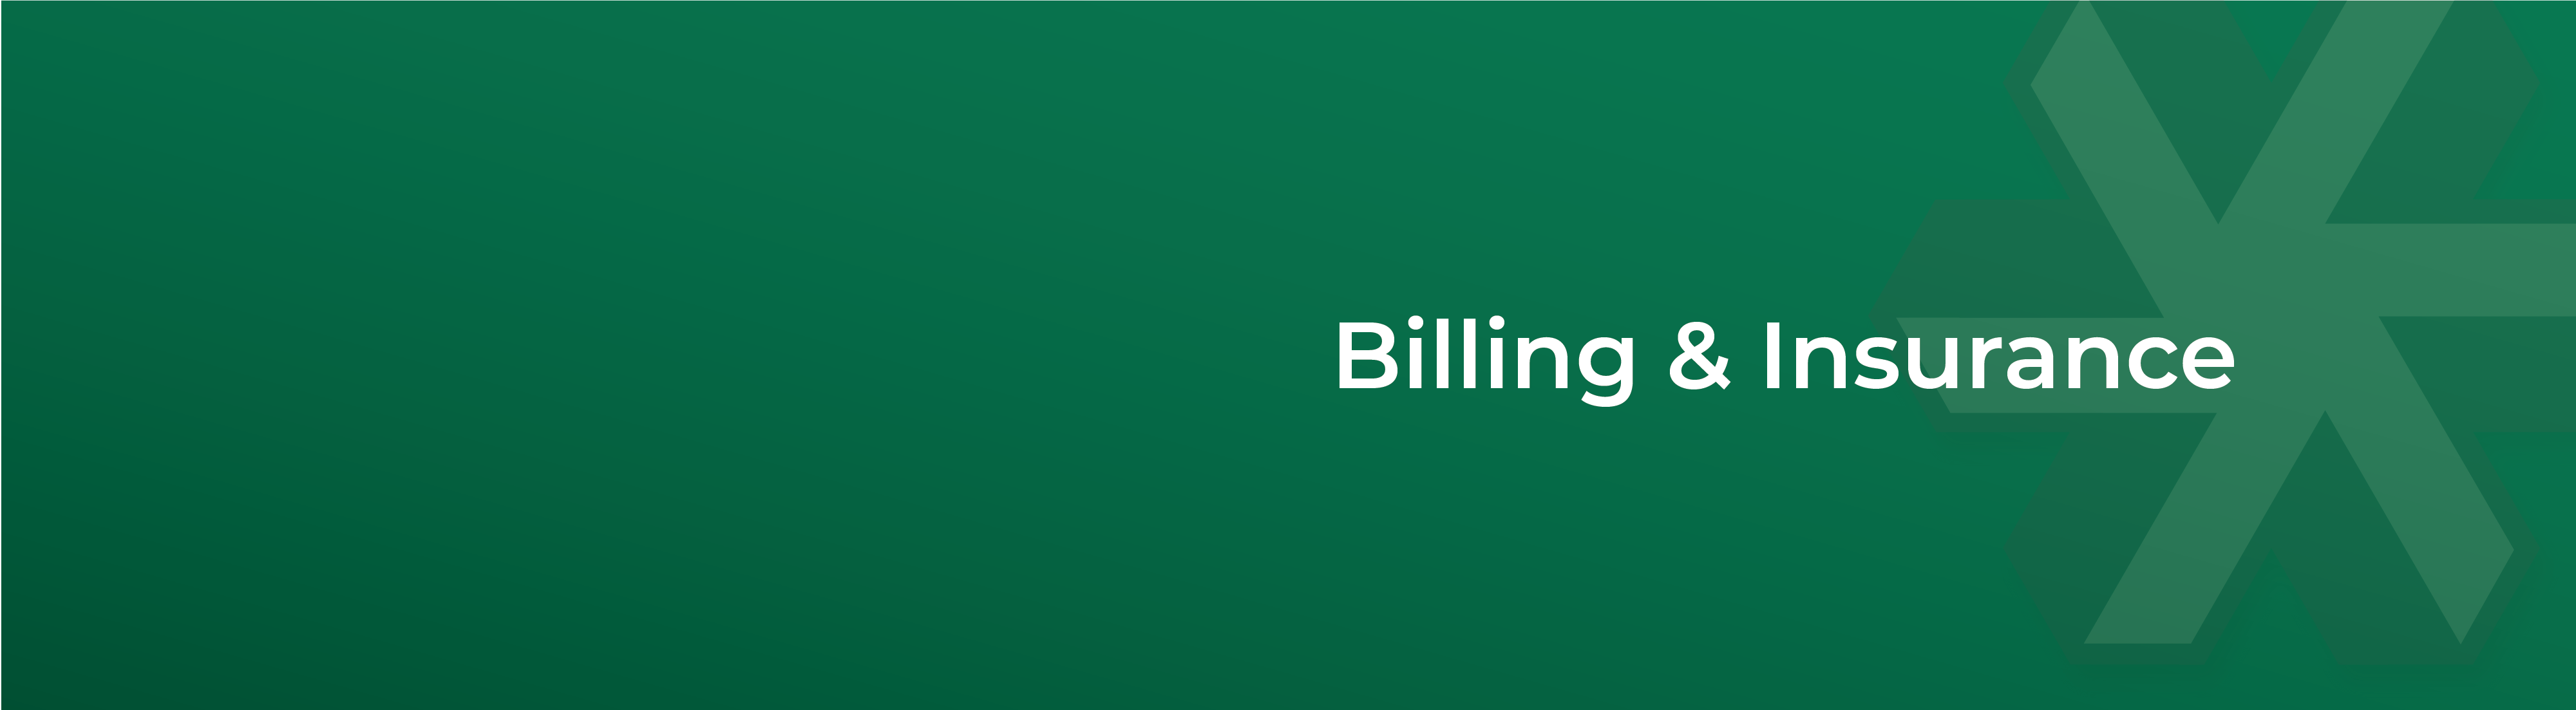 BillingInsurance-Header-01